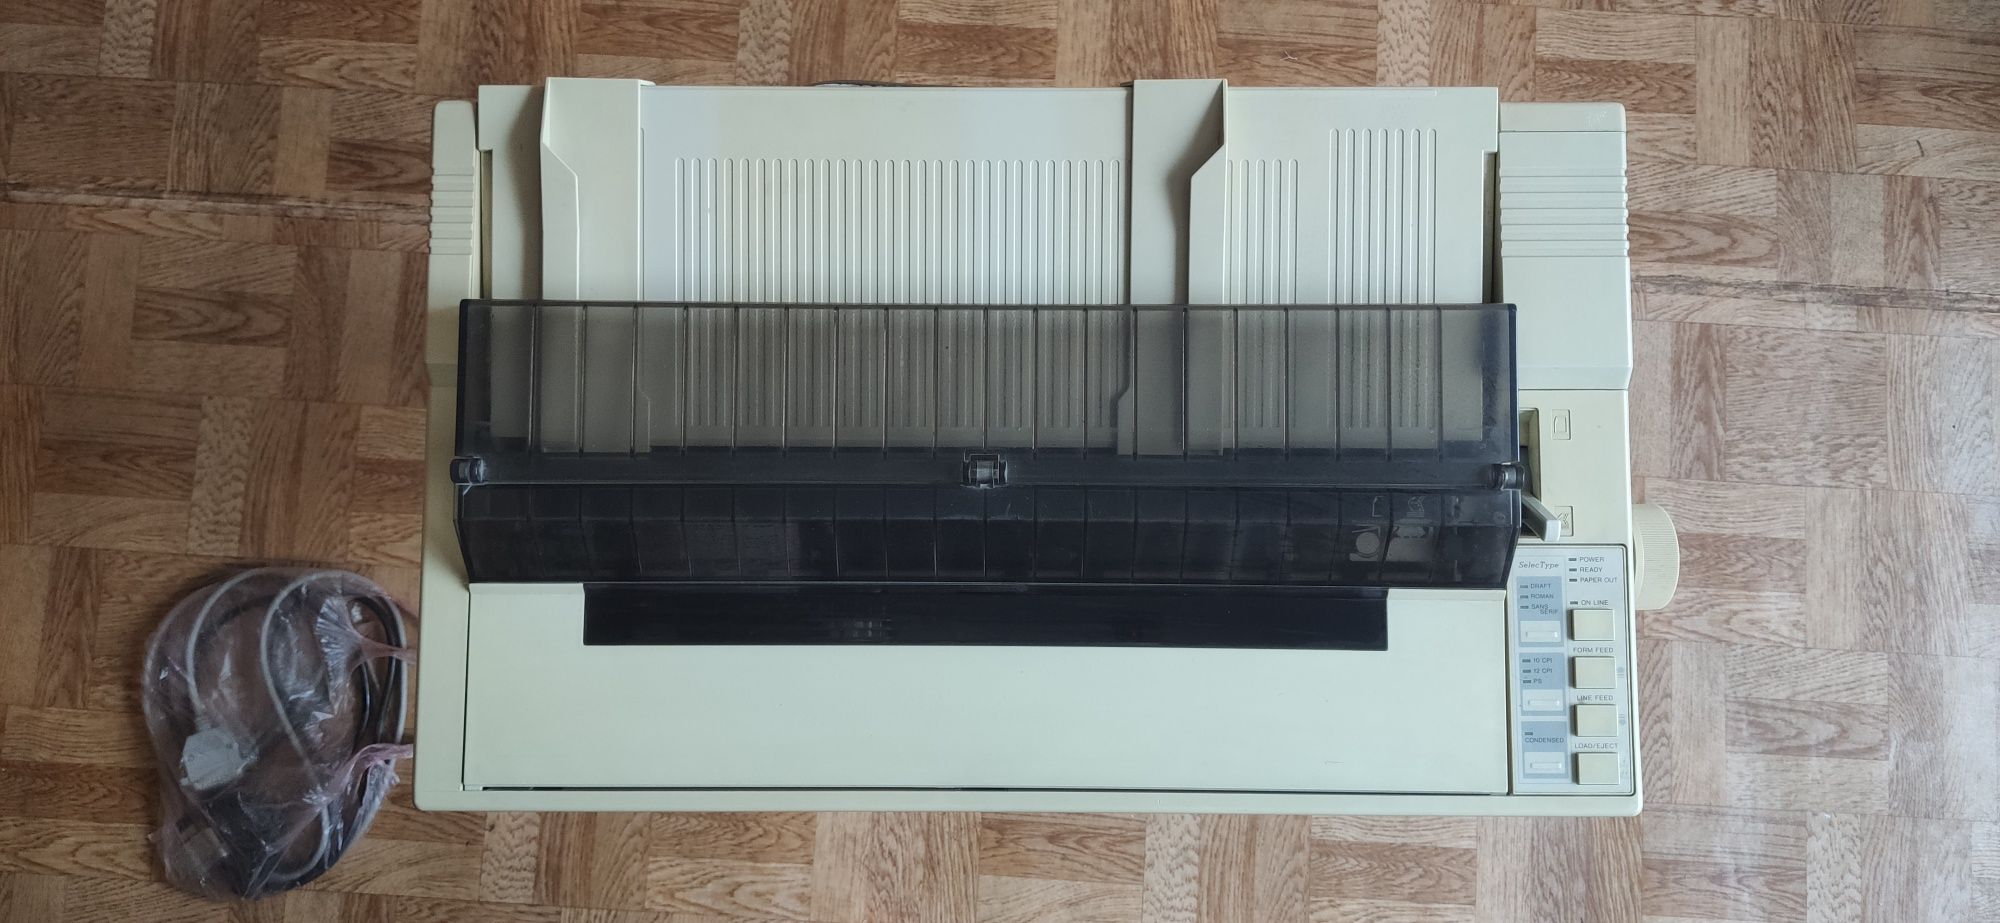 Матричный принтер формата А3 Epson FX-1050